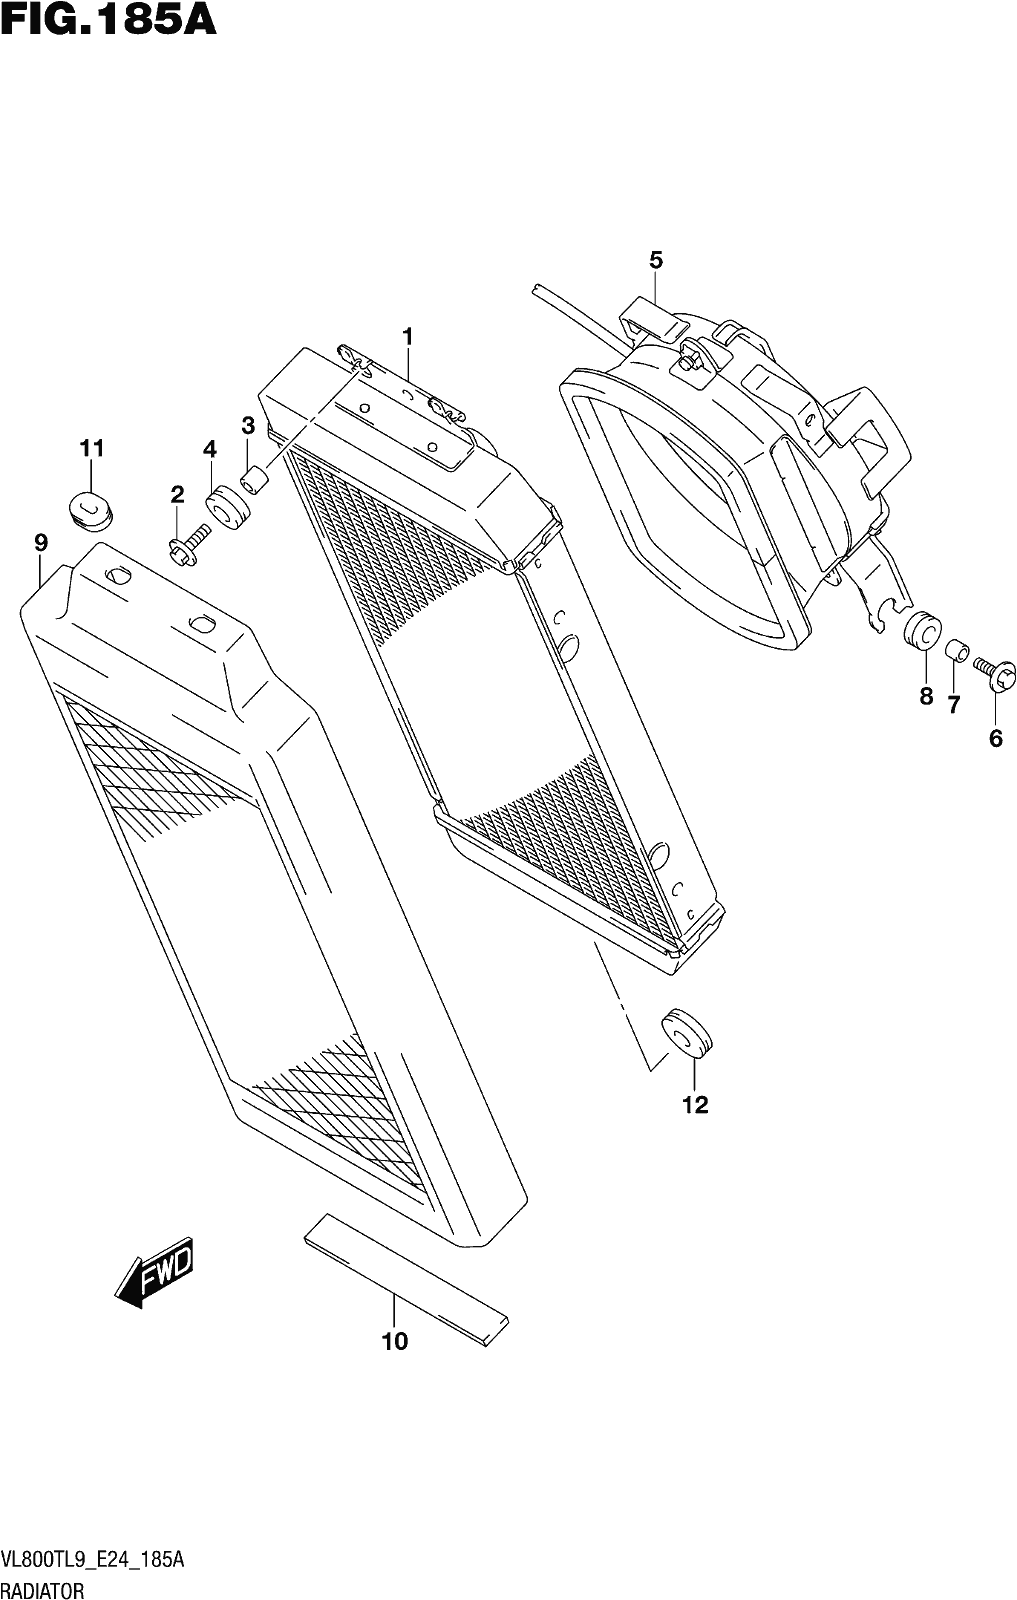 Alle Teile für das Fig. 185a Radiator des Suzuki VL 800T 2019